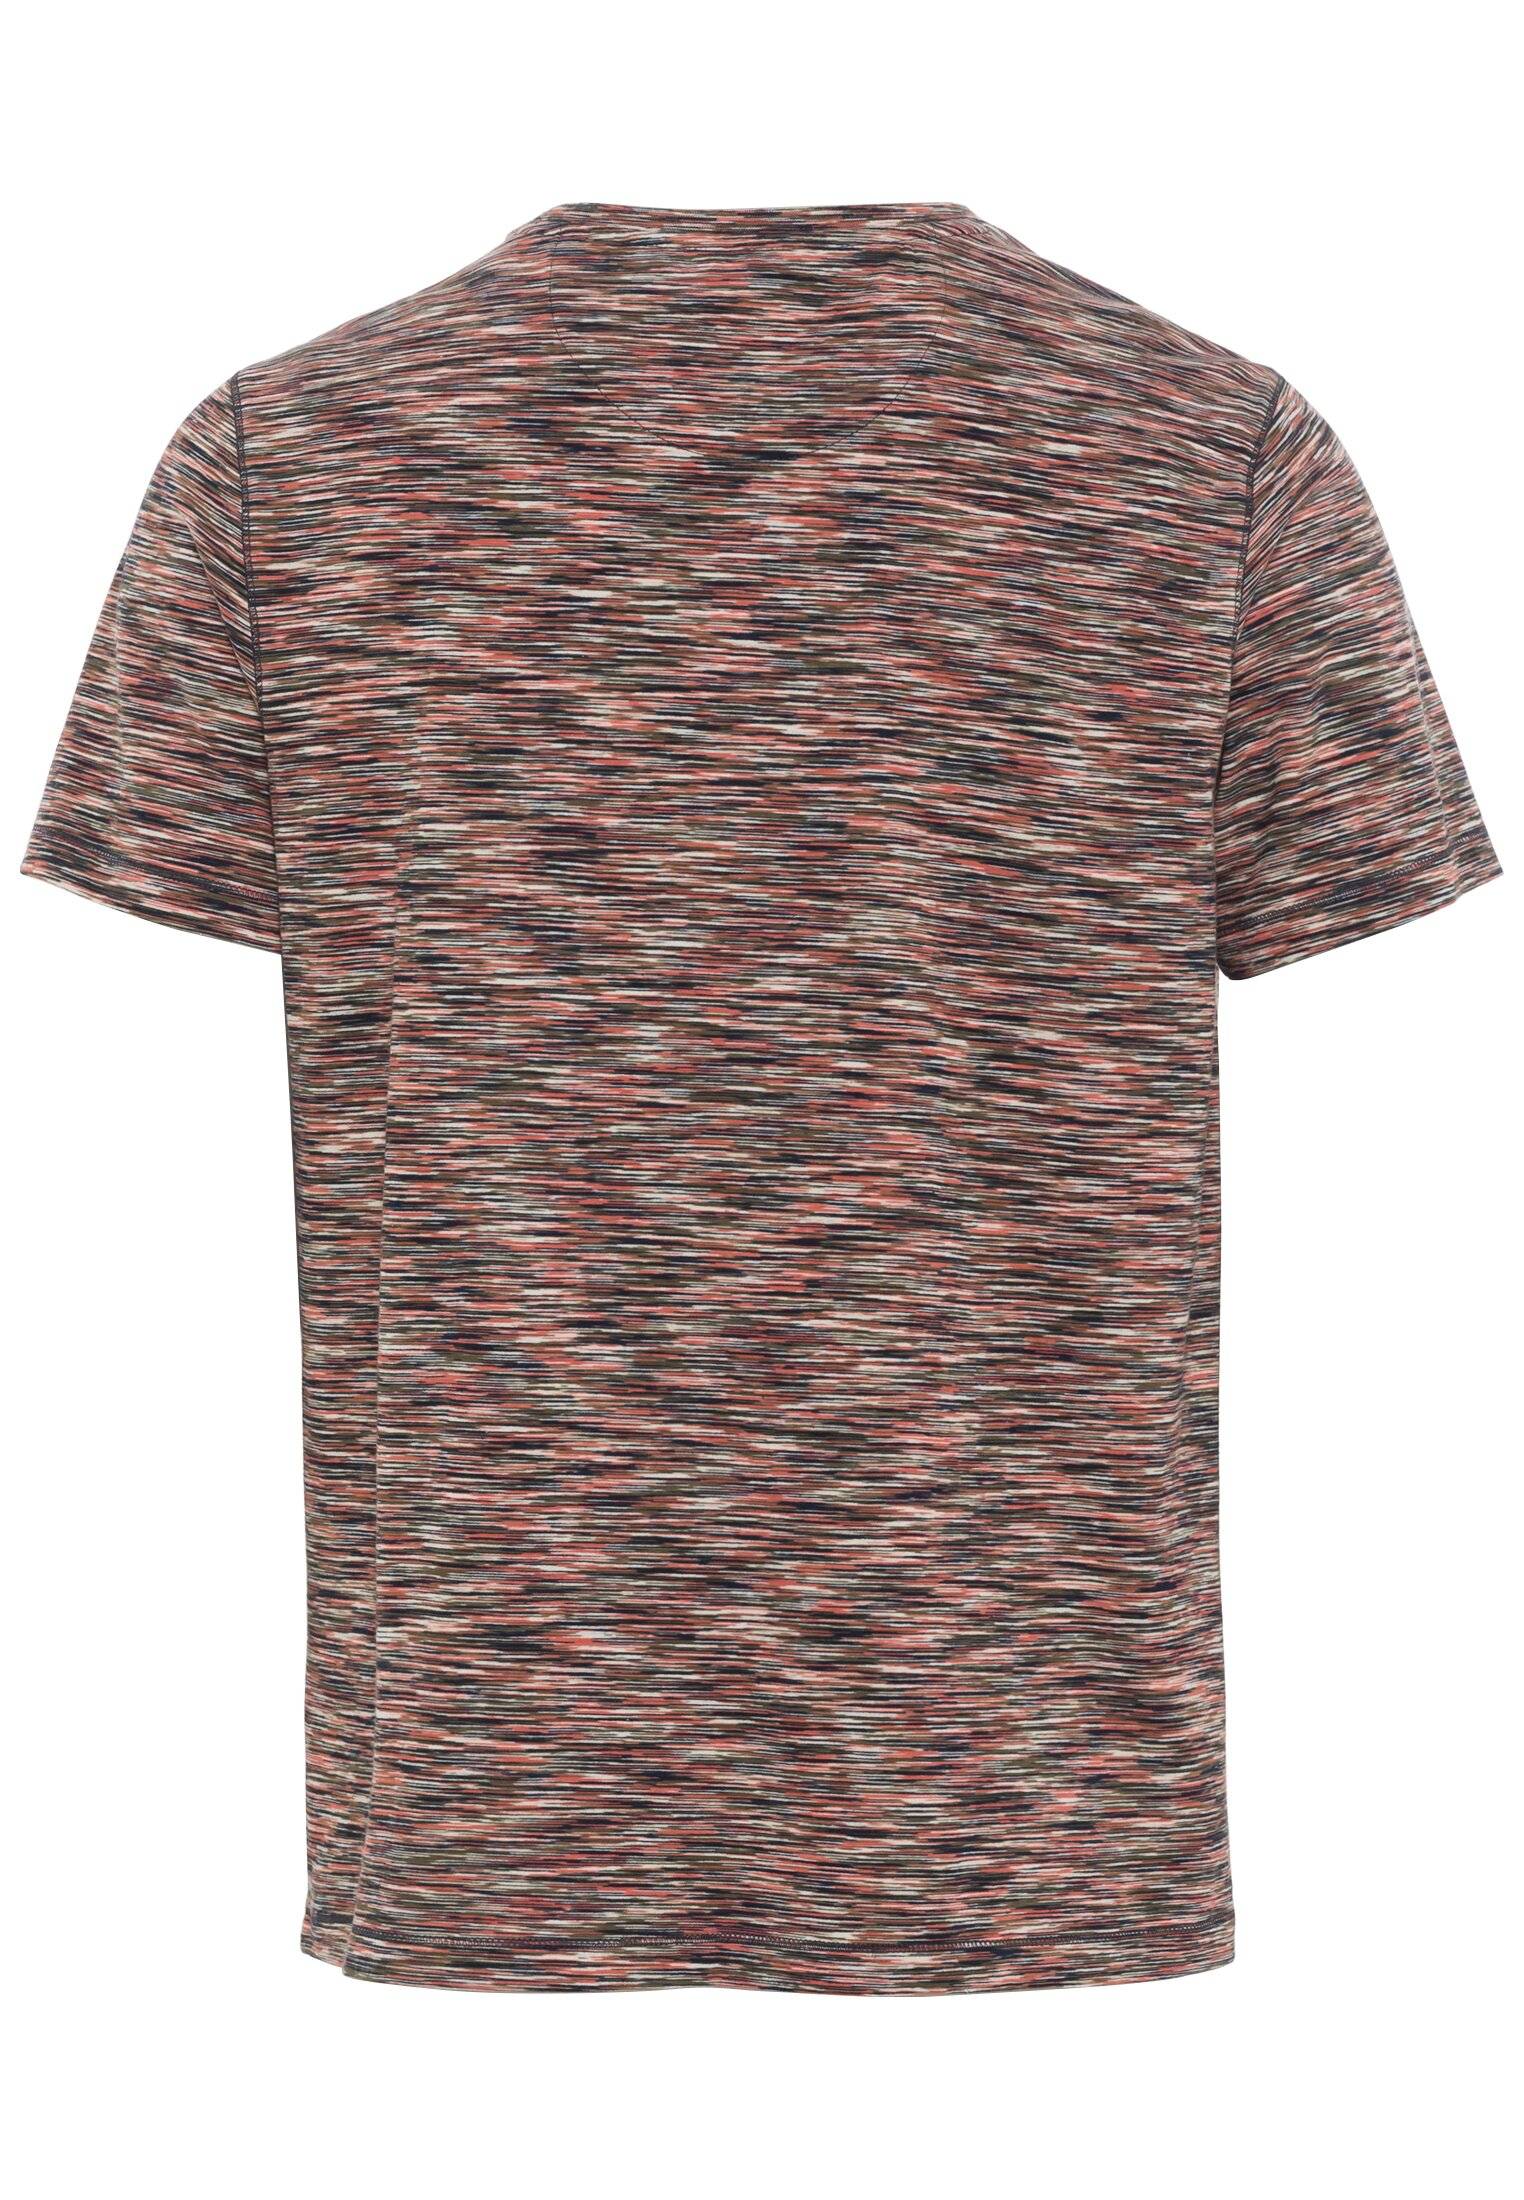 Мужская футболка Camel Active, коралловая, цвет коралловый, размер 48 - фото 2